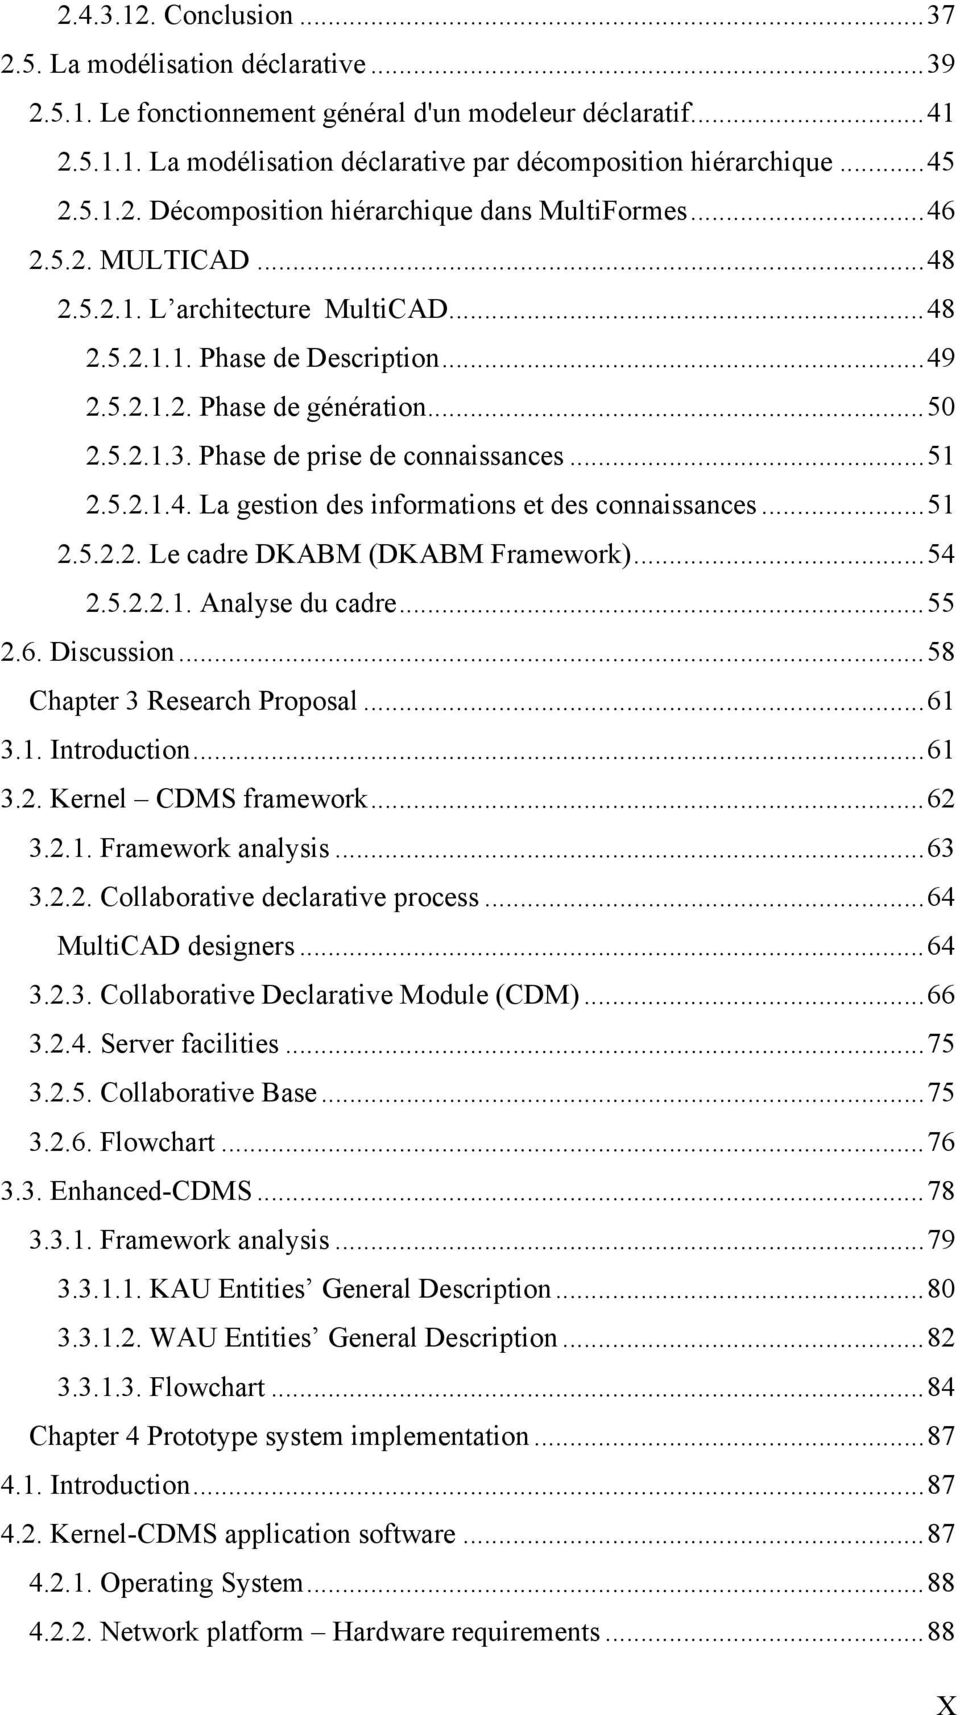 Phase de prise de connaissances...51 2.5.2.1.4. La gestion des informations et des connaissances...51 2.5.2.2. Le cadre DKABM (DKABM Framework)...54 2.5.2.2.1. Analyse du cadre...55 2.6. Discussion.